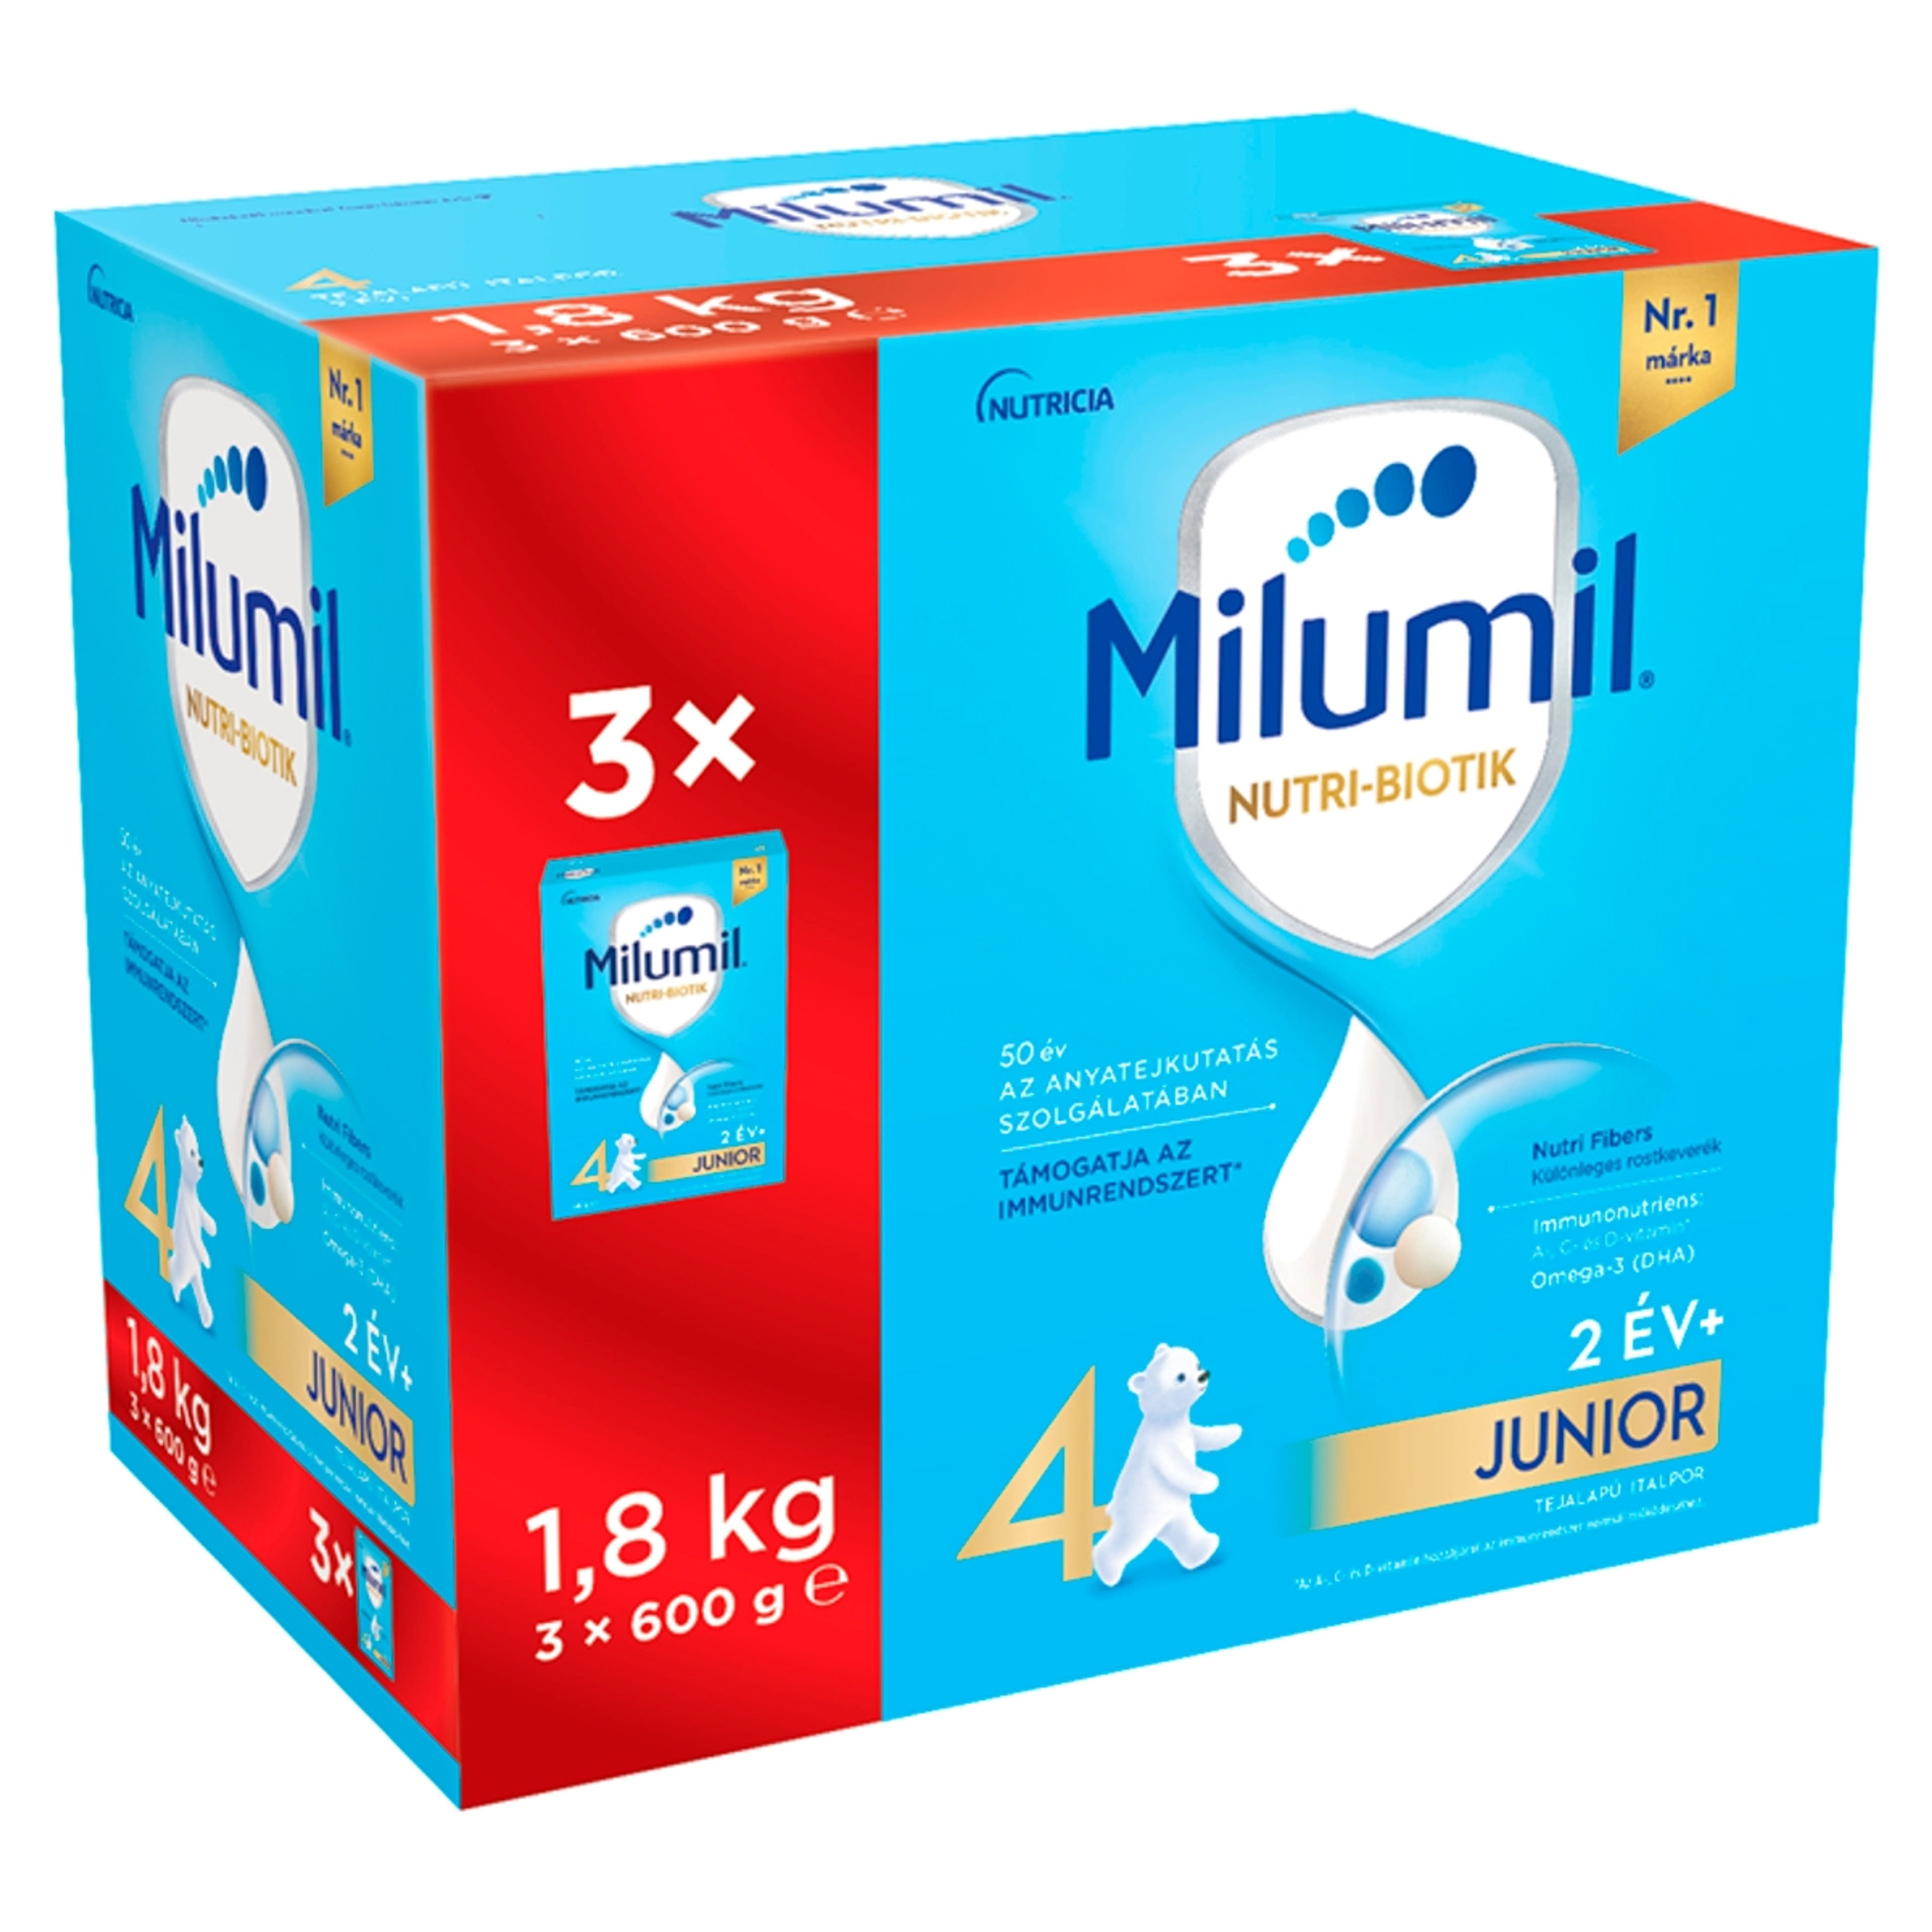 Milumil Nutri-Biotik 4 Junior tejalapú italpor 2 éves kortól - 1958 g